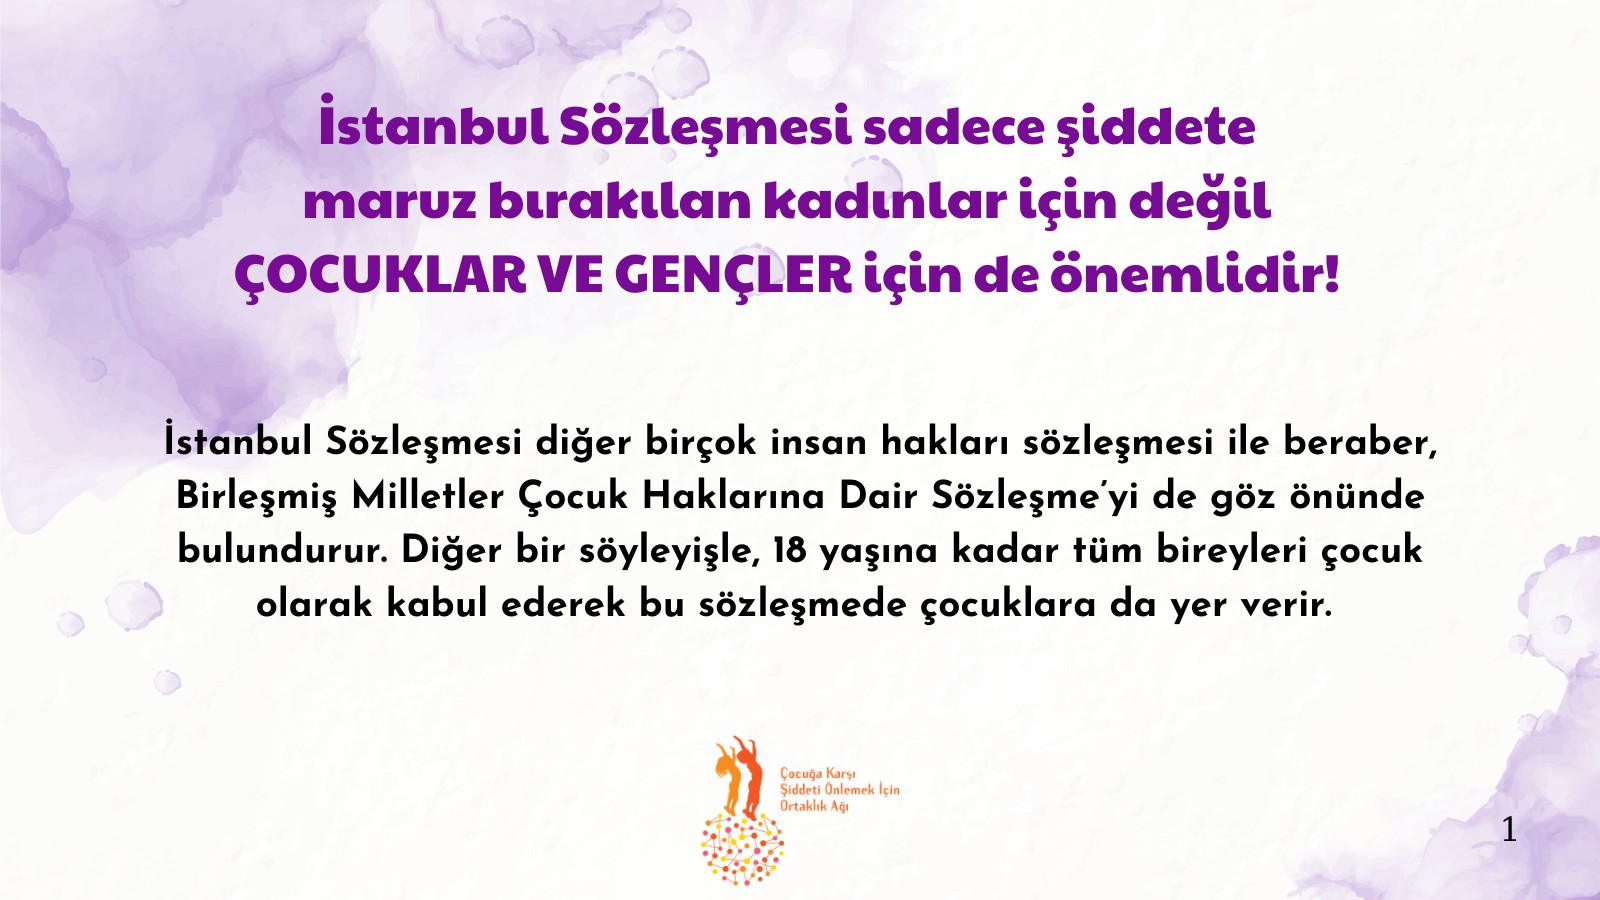 “İstanbul Sözleşmesi çocuklar ve gençler için de önemlidir” Kaos GL - LGBTİ+ Haber Portalı